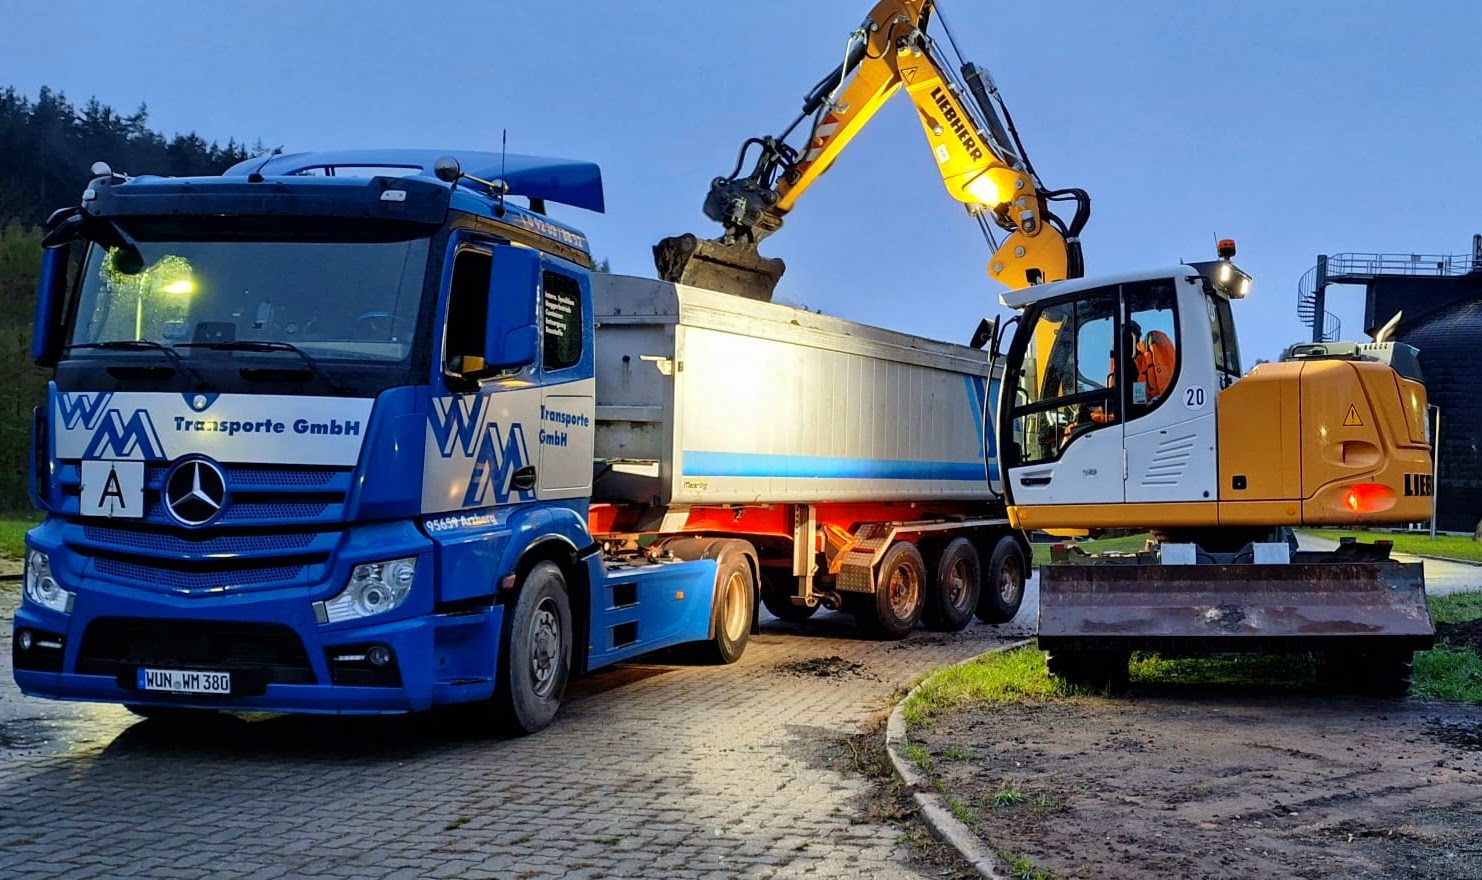 Bilder WM Transporte GmbH